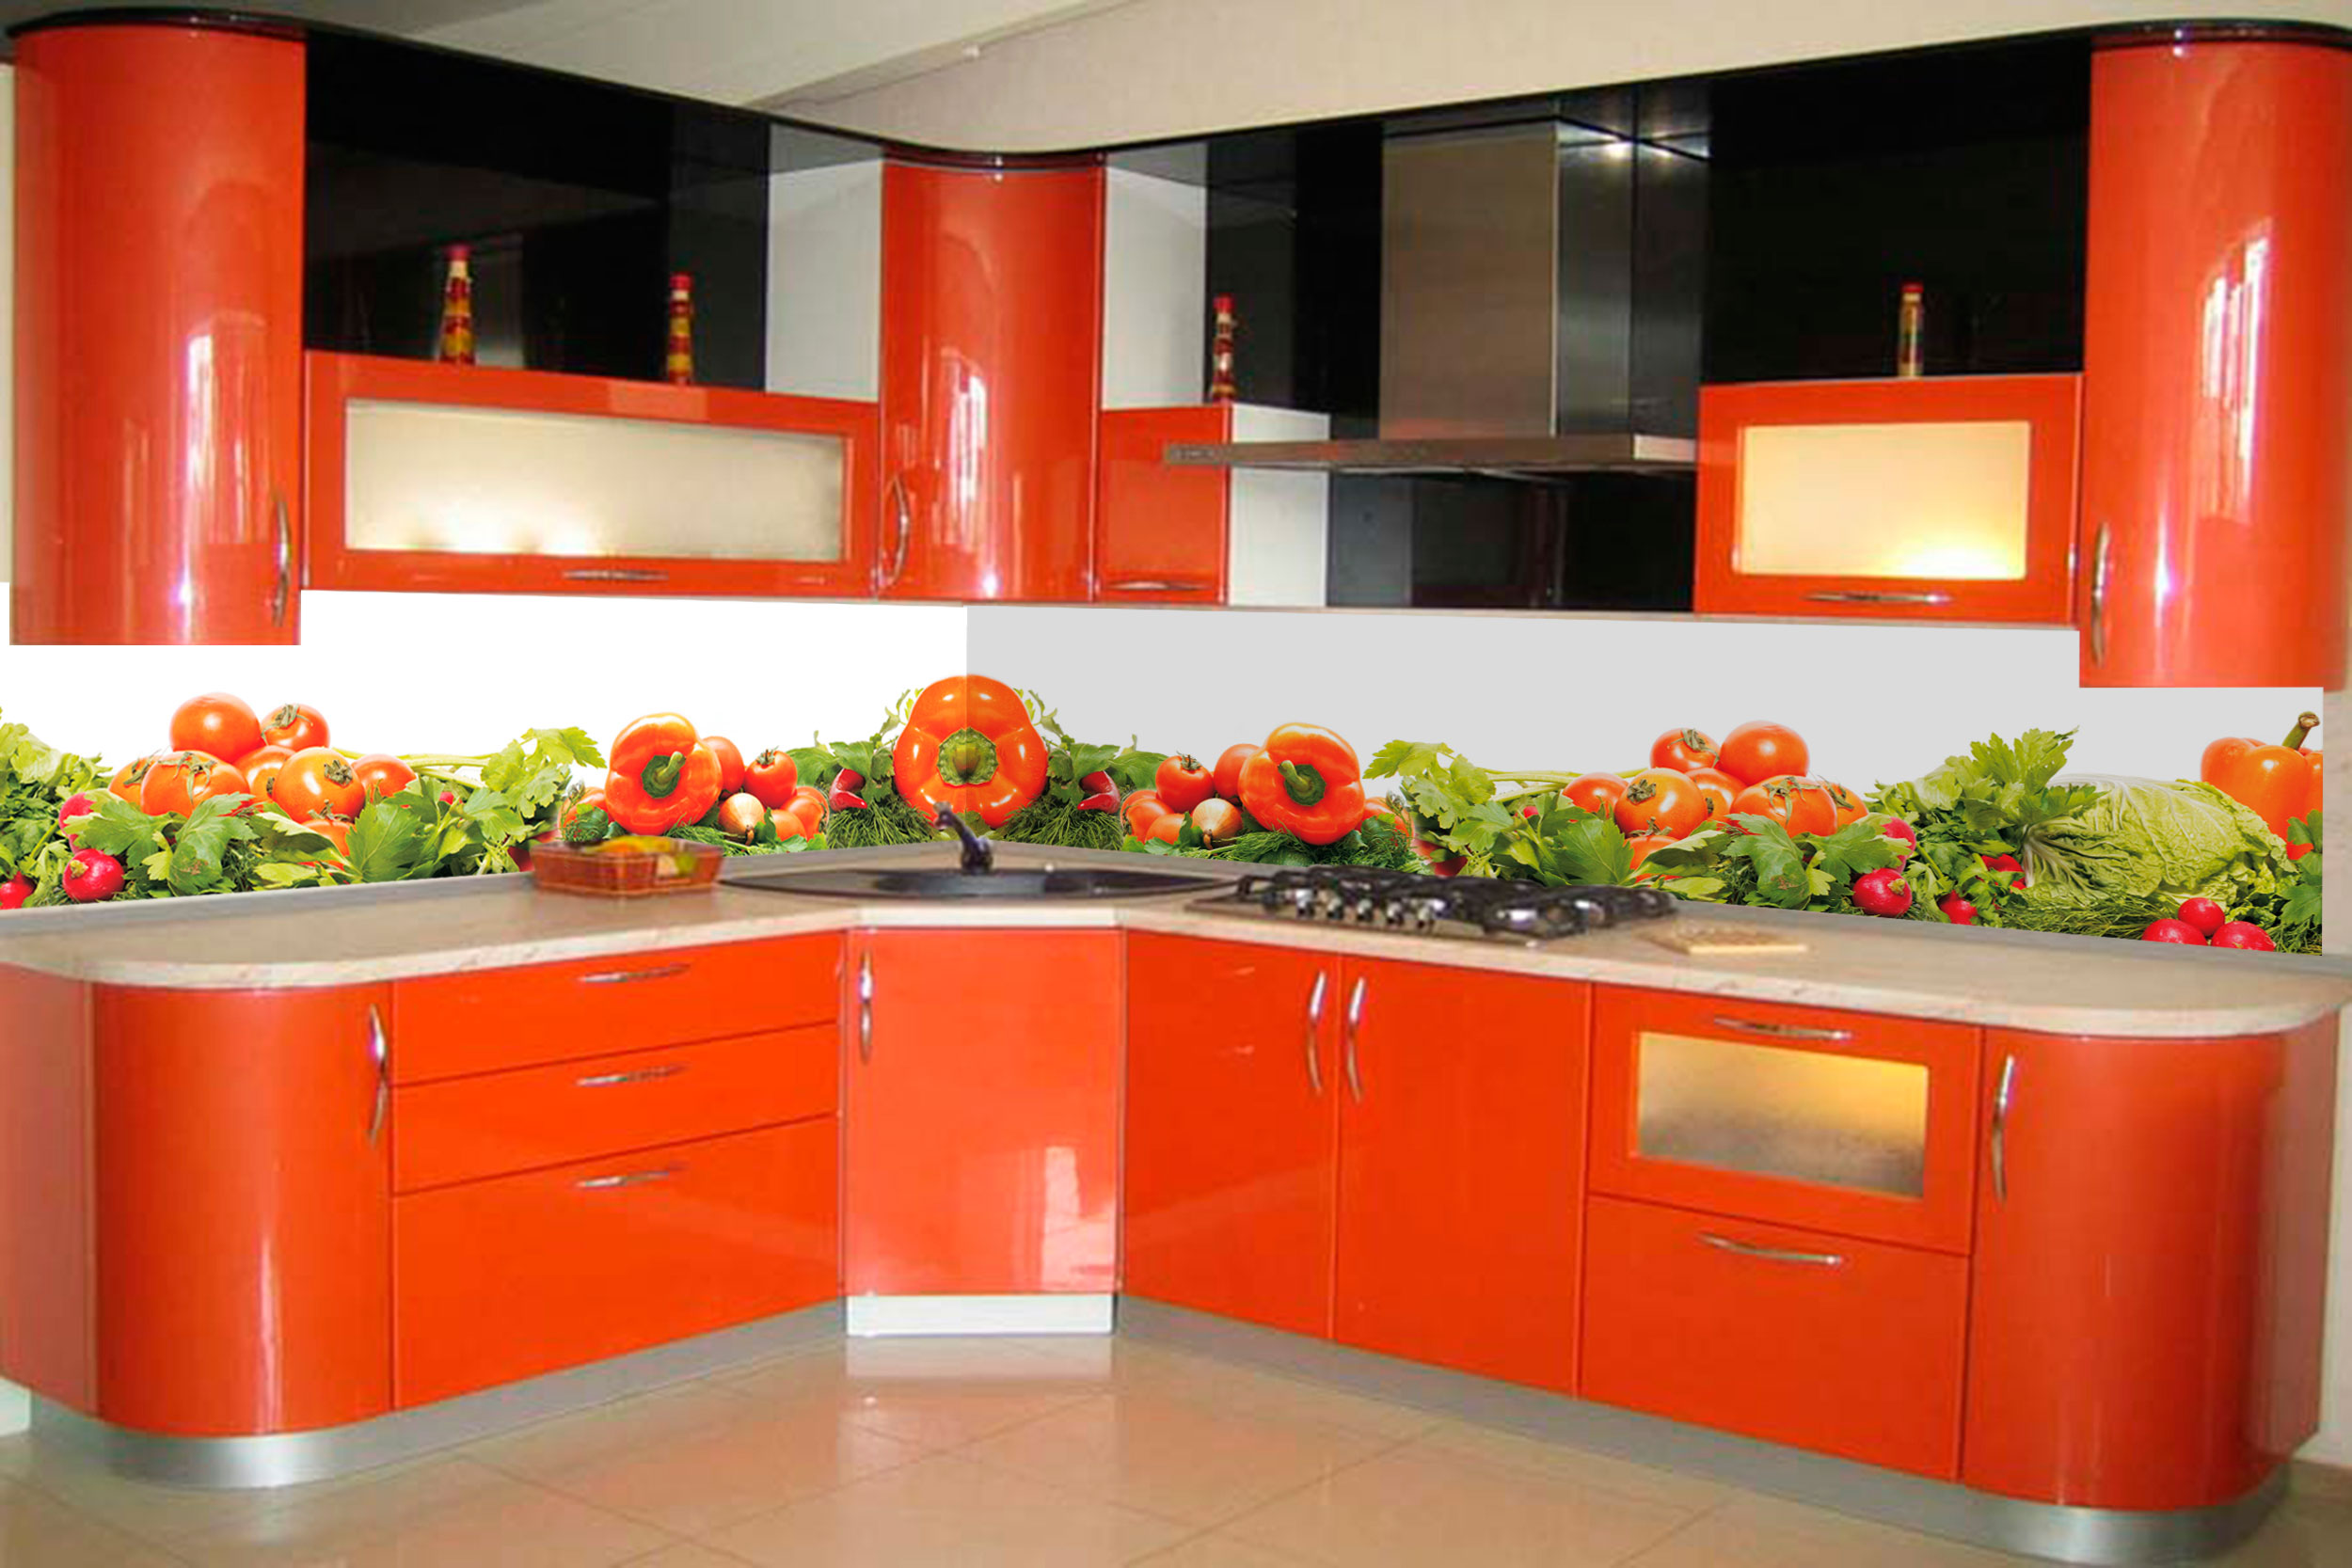 Эксклюзивный дизайн стеклянного кухонного фартука с фото-принтом овощей и зелени